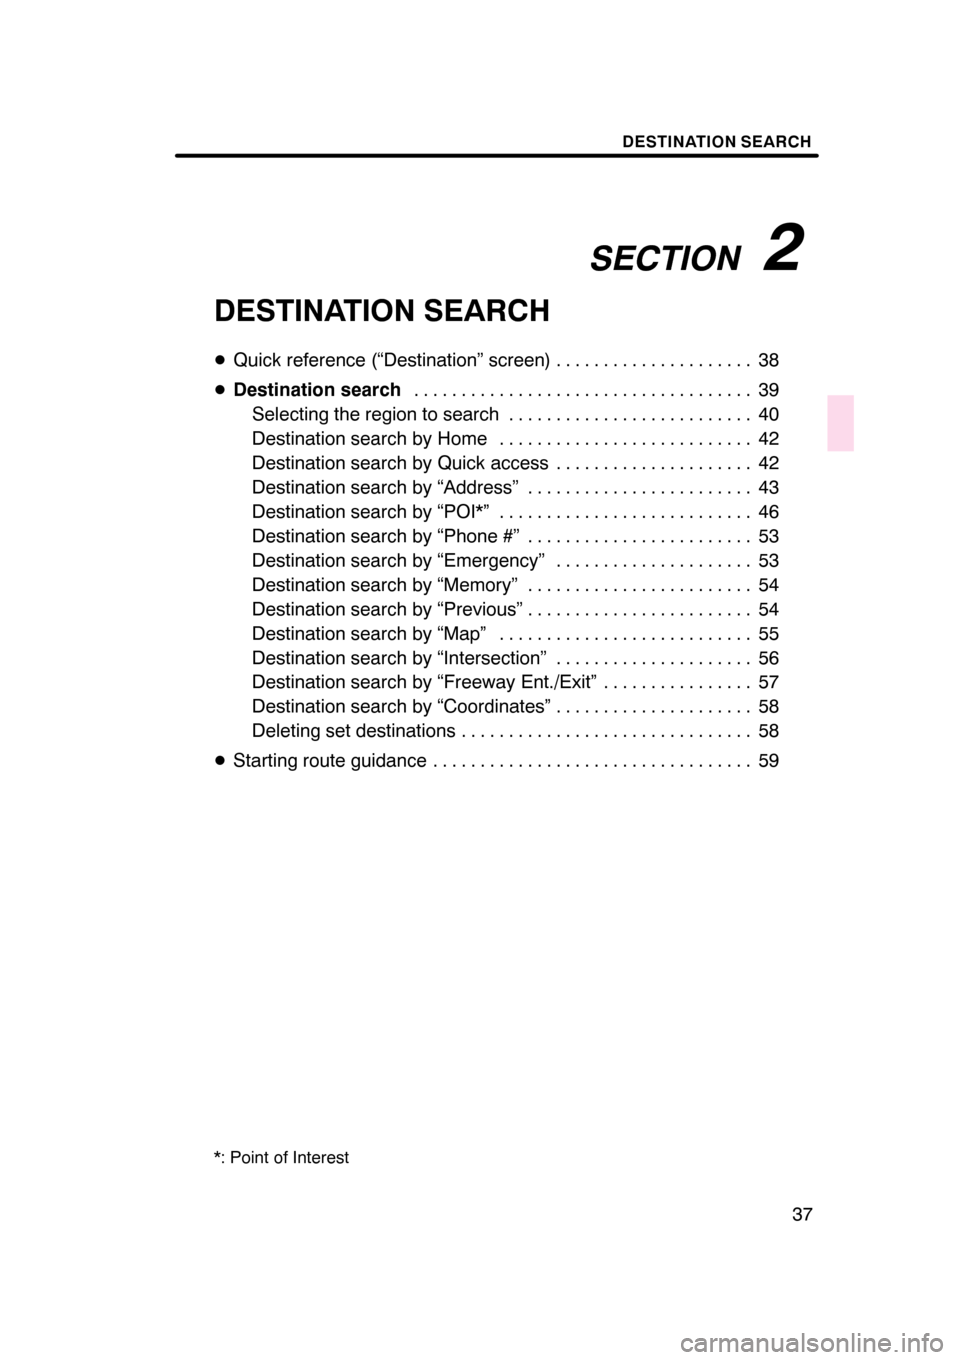 Lexus GS350 2008  Navigation Manual SECTION2
DESTINATION SEARCH
37
DESTINATION SEARCH
DQuick reference (“Destination” screen) 38 .....................
D Destination search 39
....................................
Selecting the region